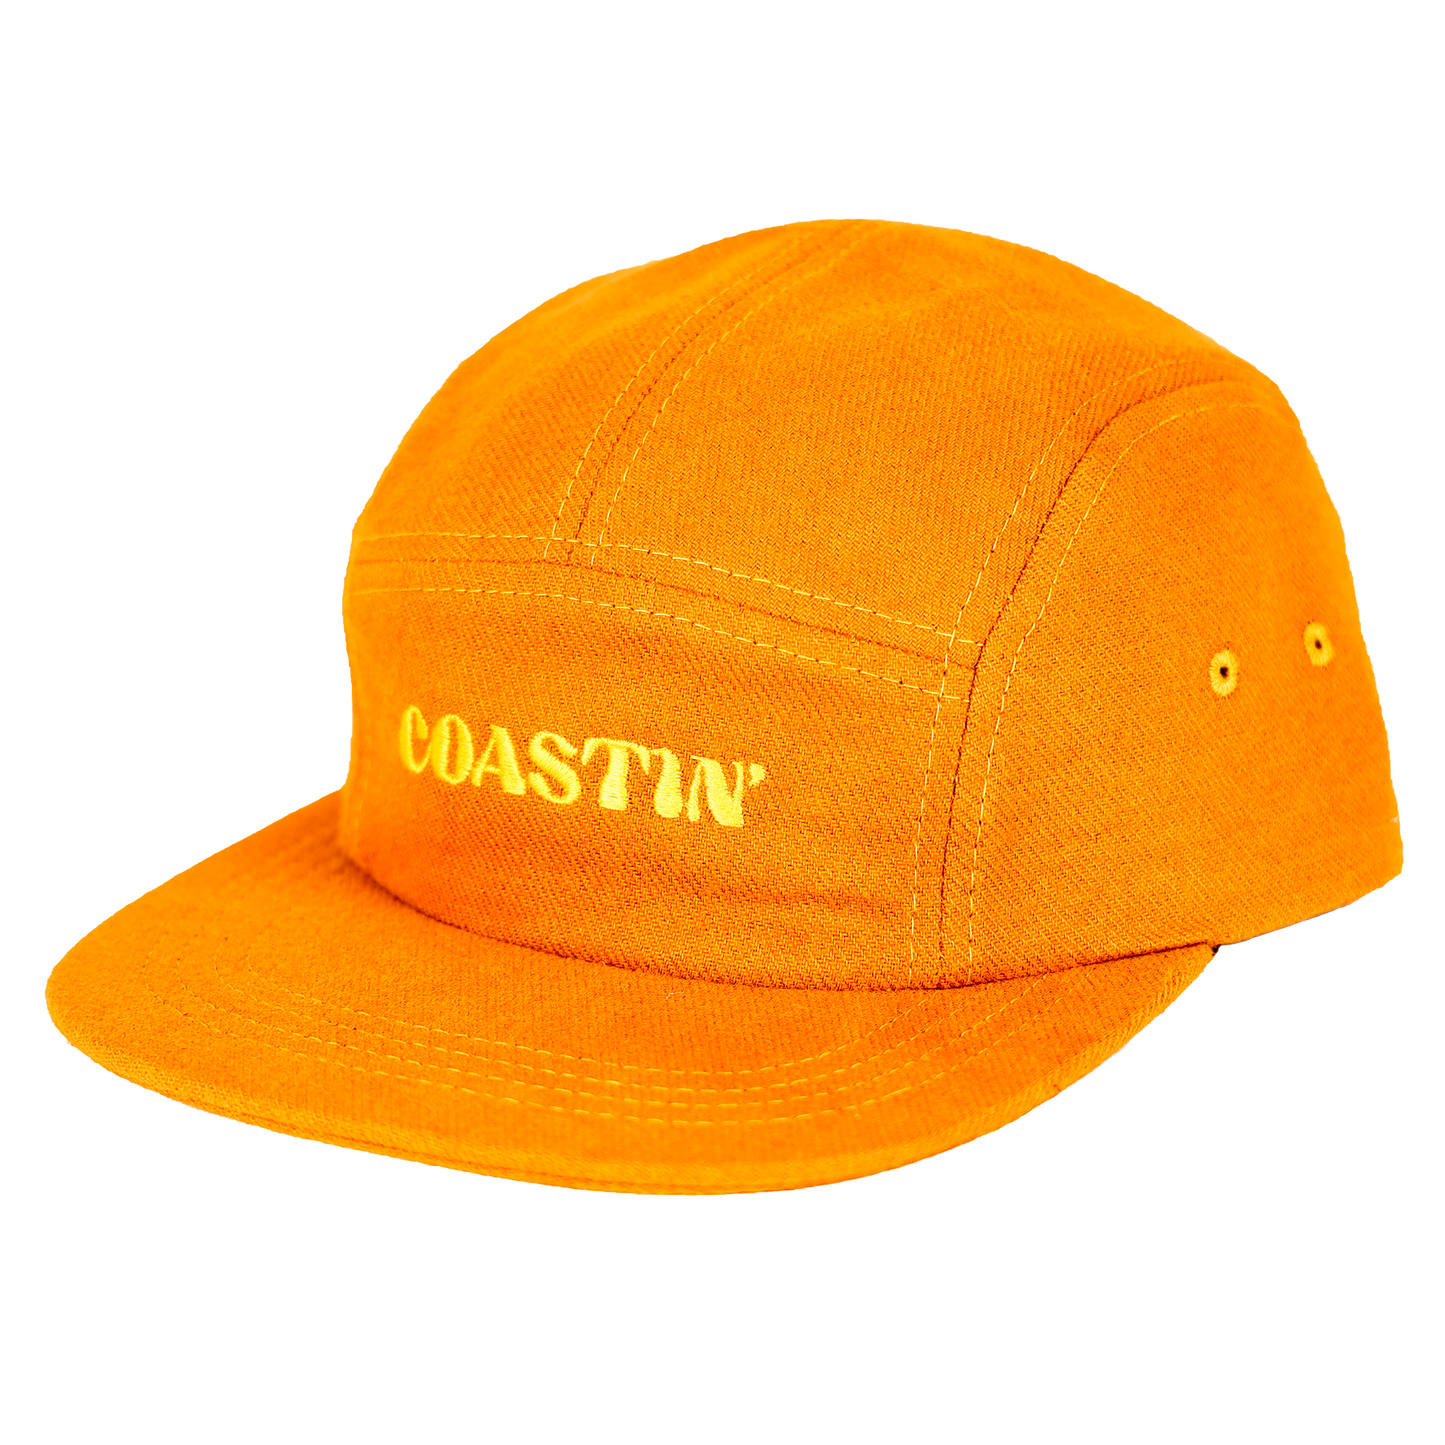 Hat (5 Panel) - Coastin' Plastic Free Camp Cap